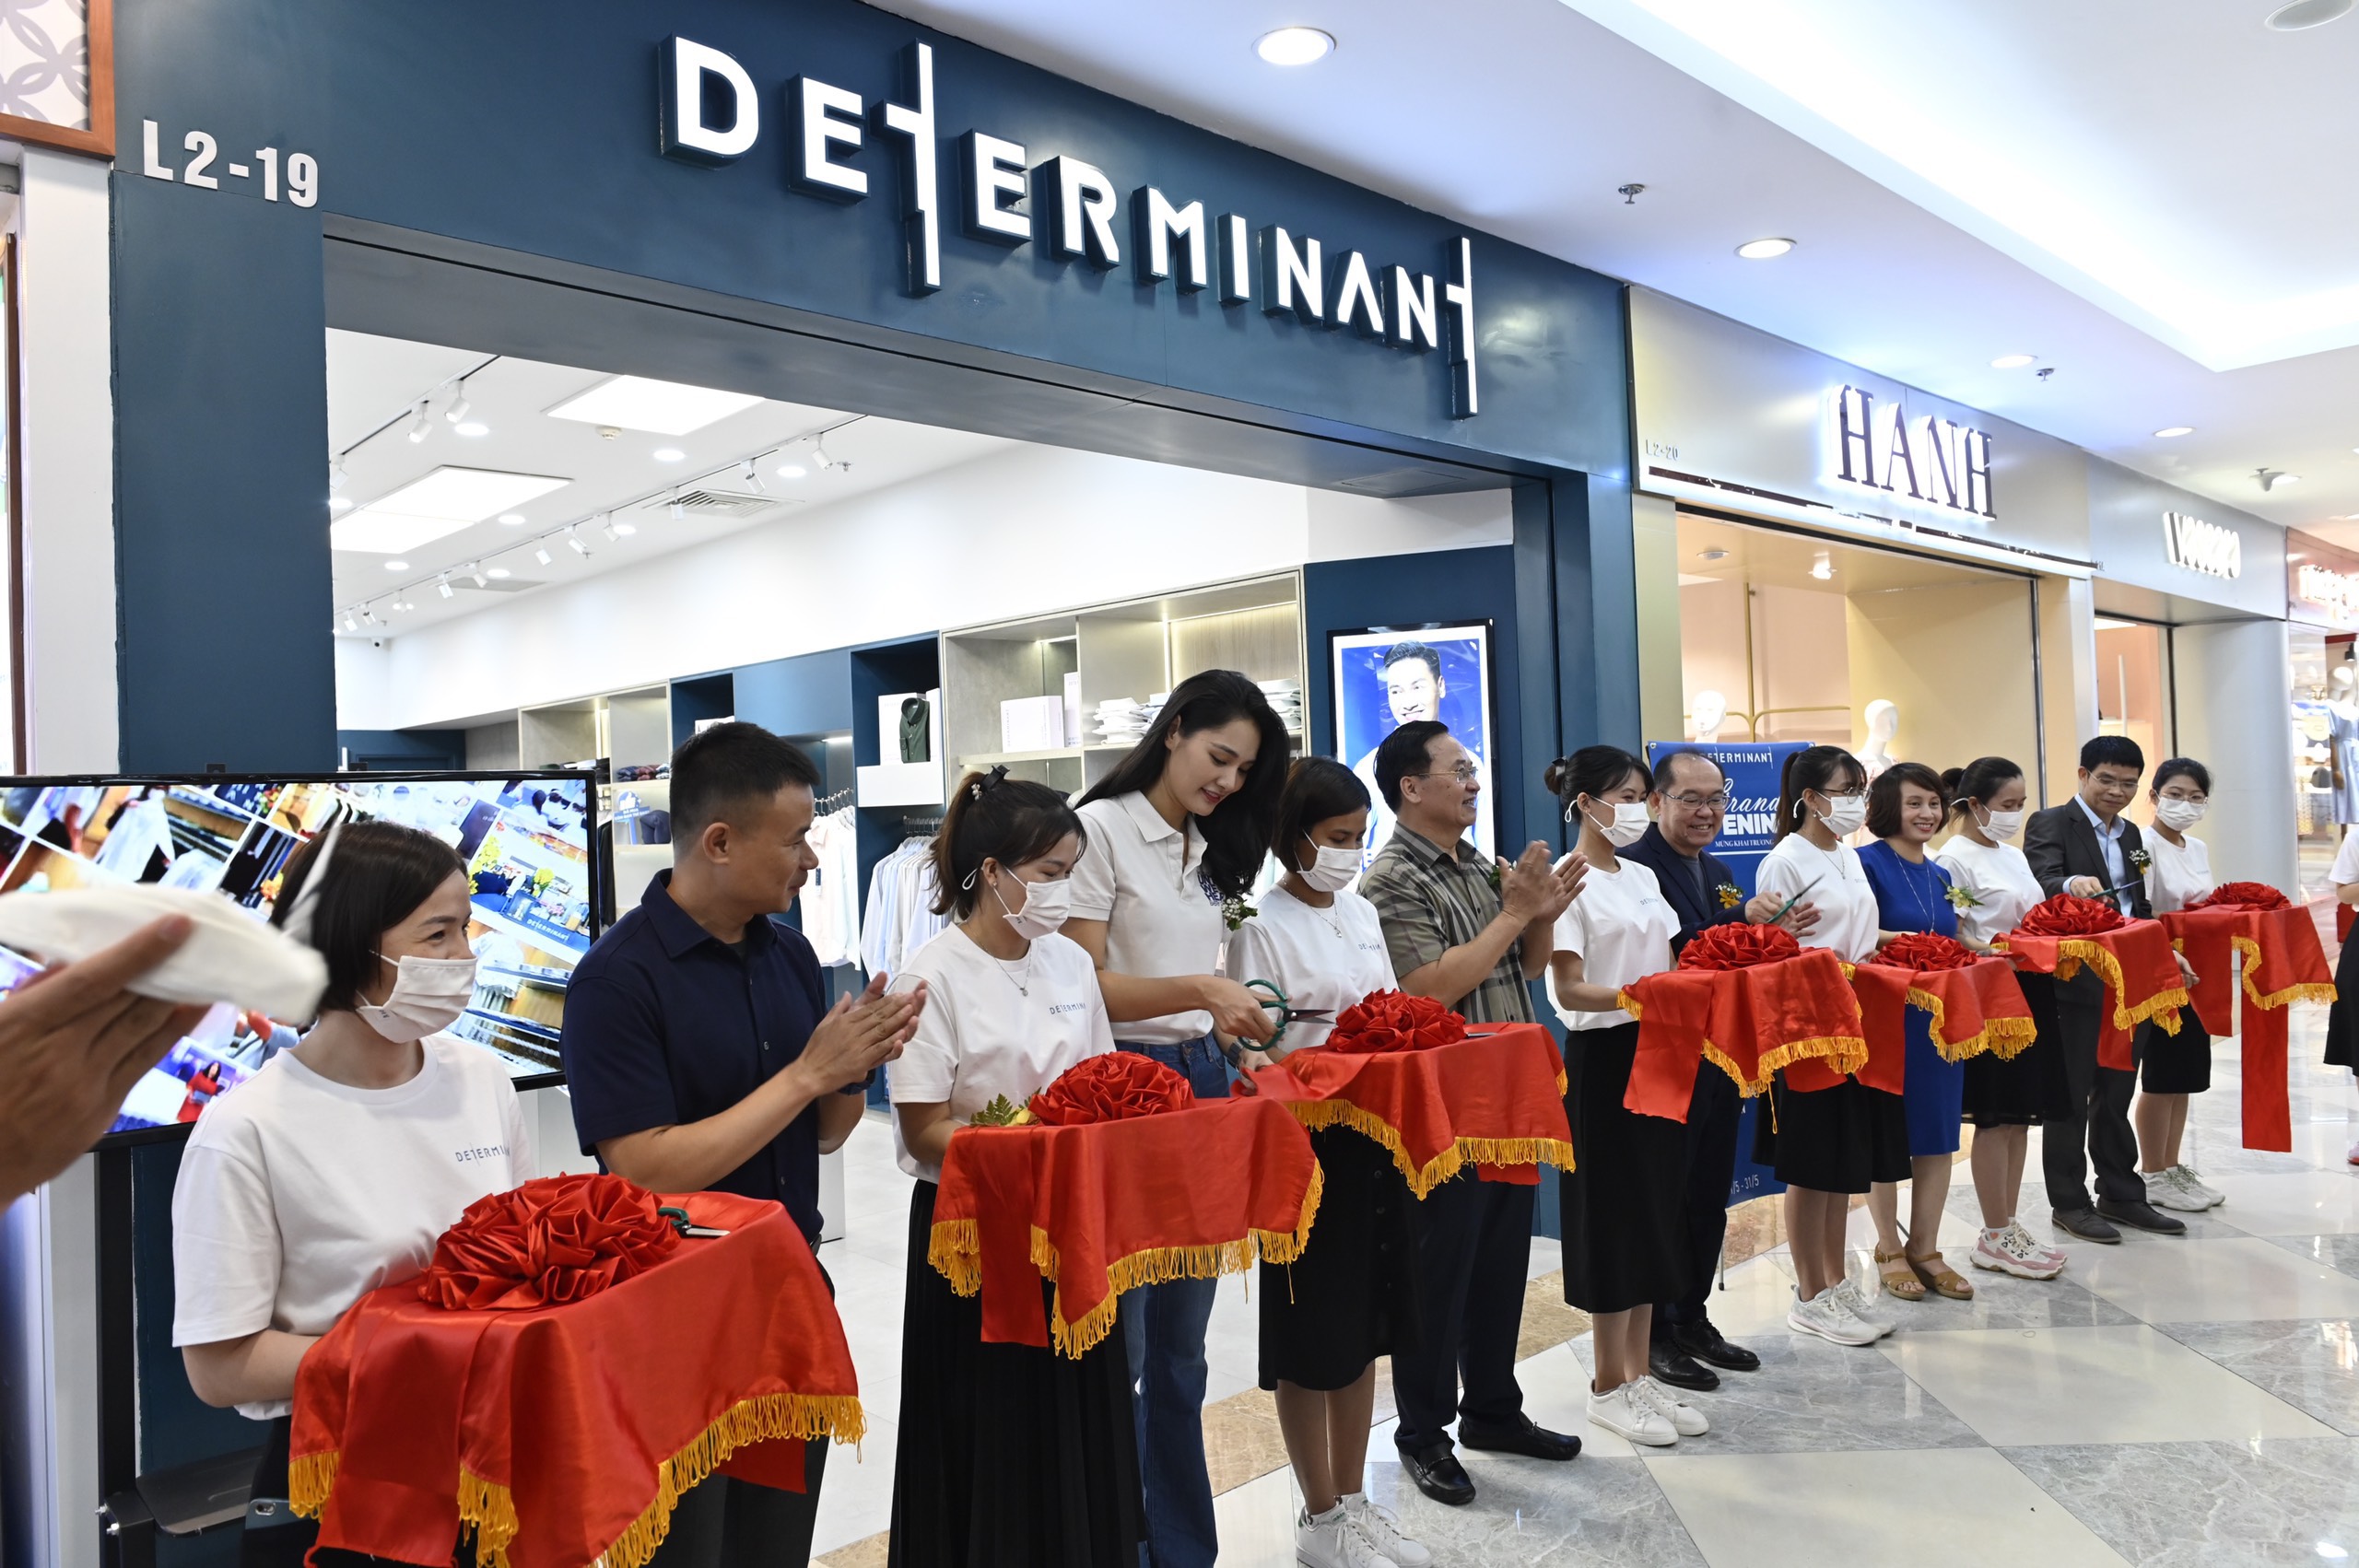 DETERMIANT - 擁有 61 種香港襯衫尺碼的時尚品牌 - 2